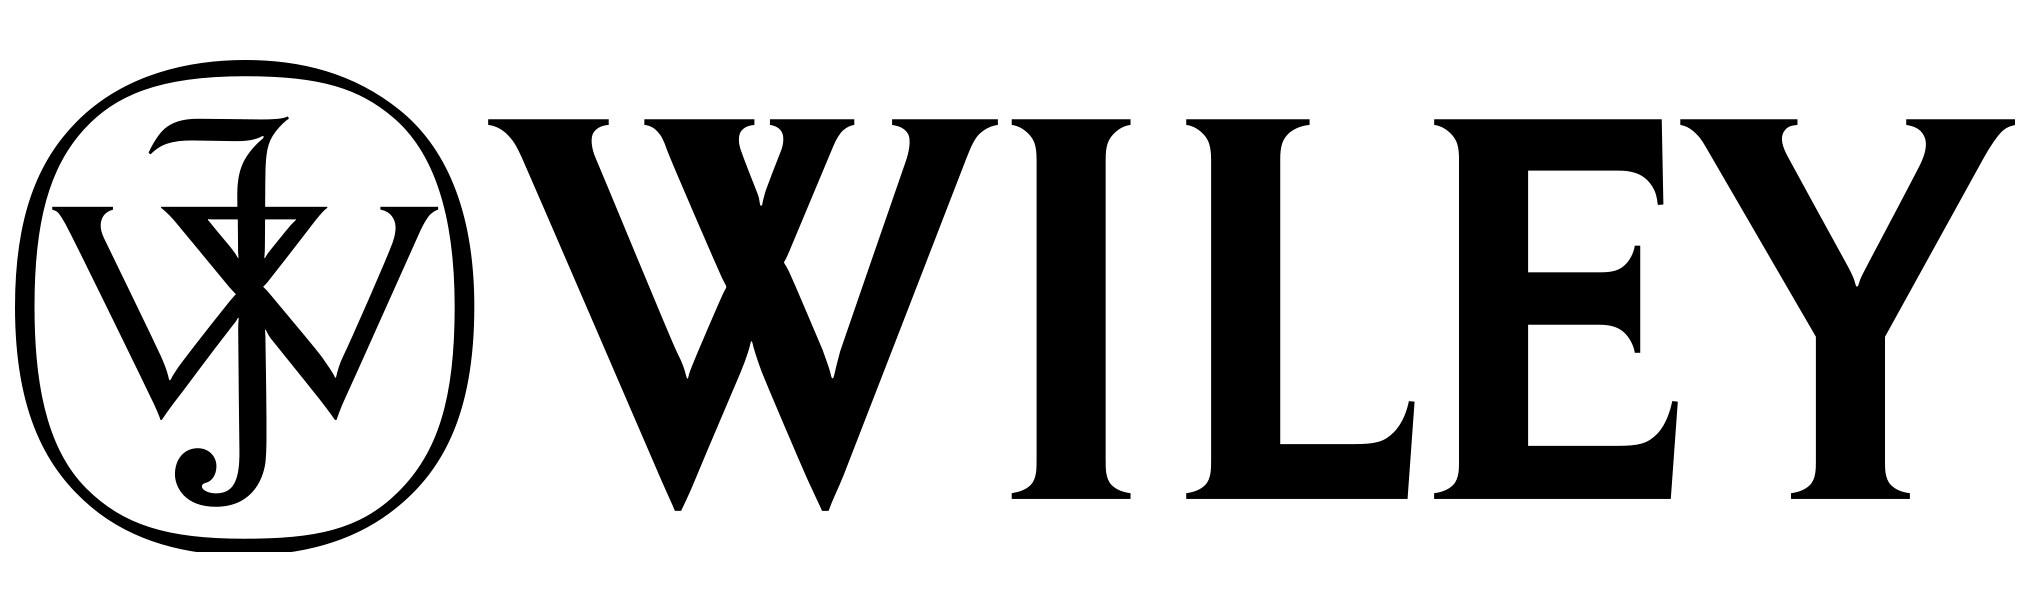 Resultado de imagen de wiley logo